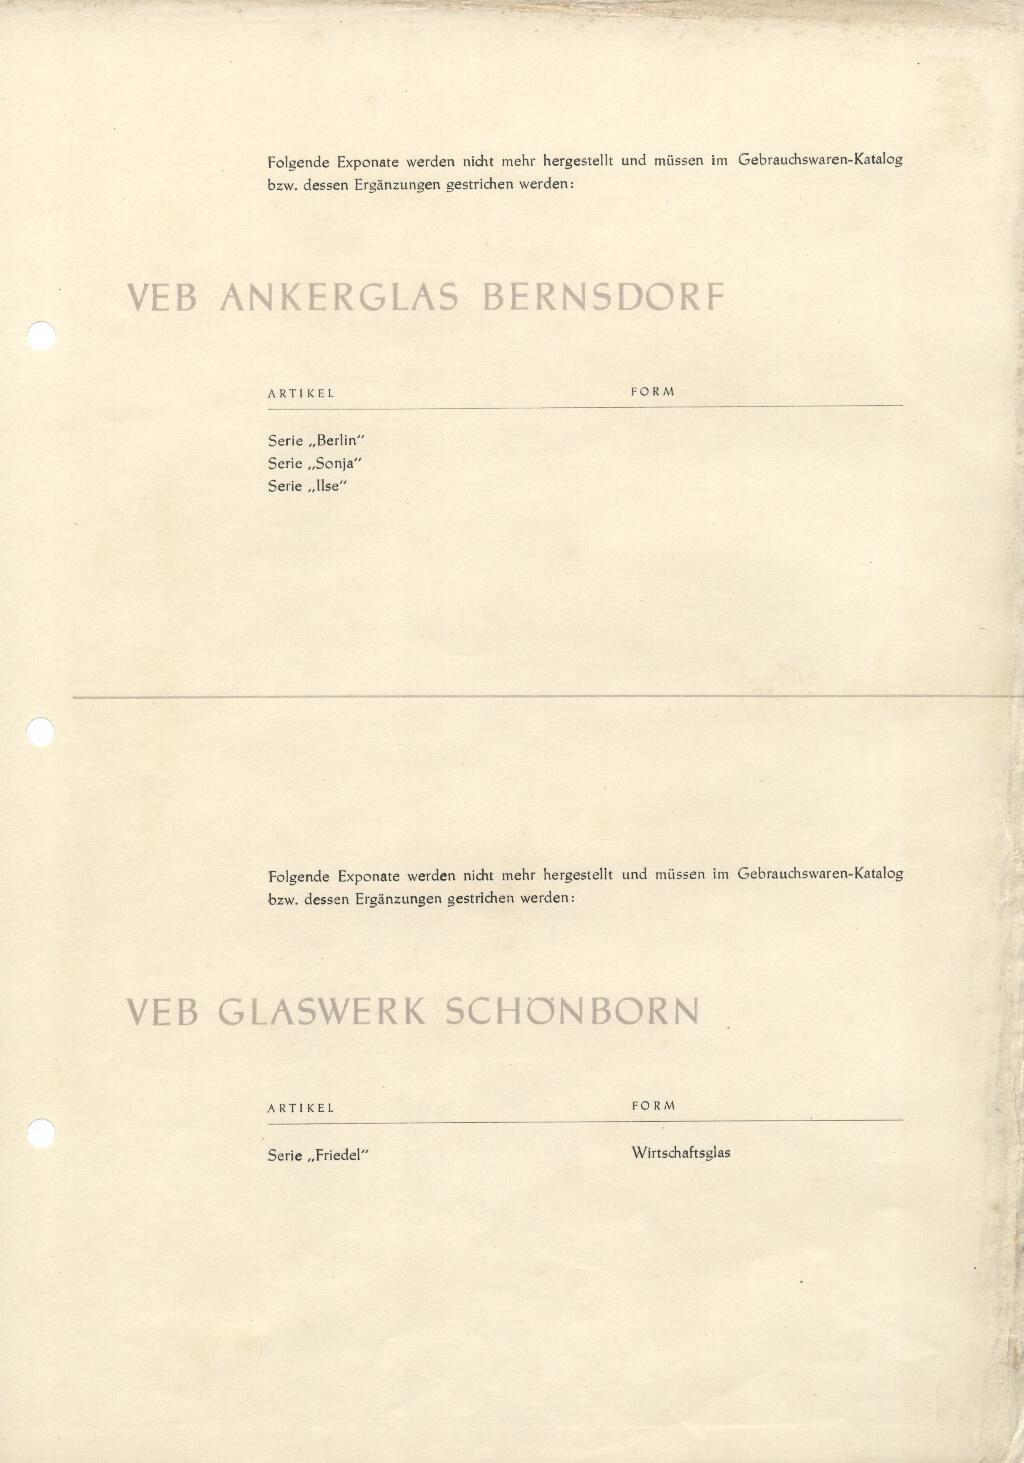 "DDR Gebrauchswaren-Katalog Berichtigung 1959"